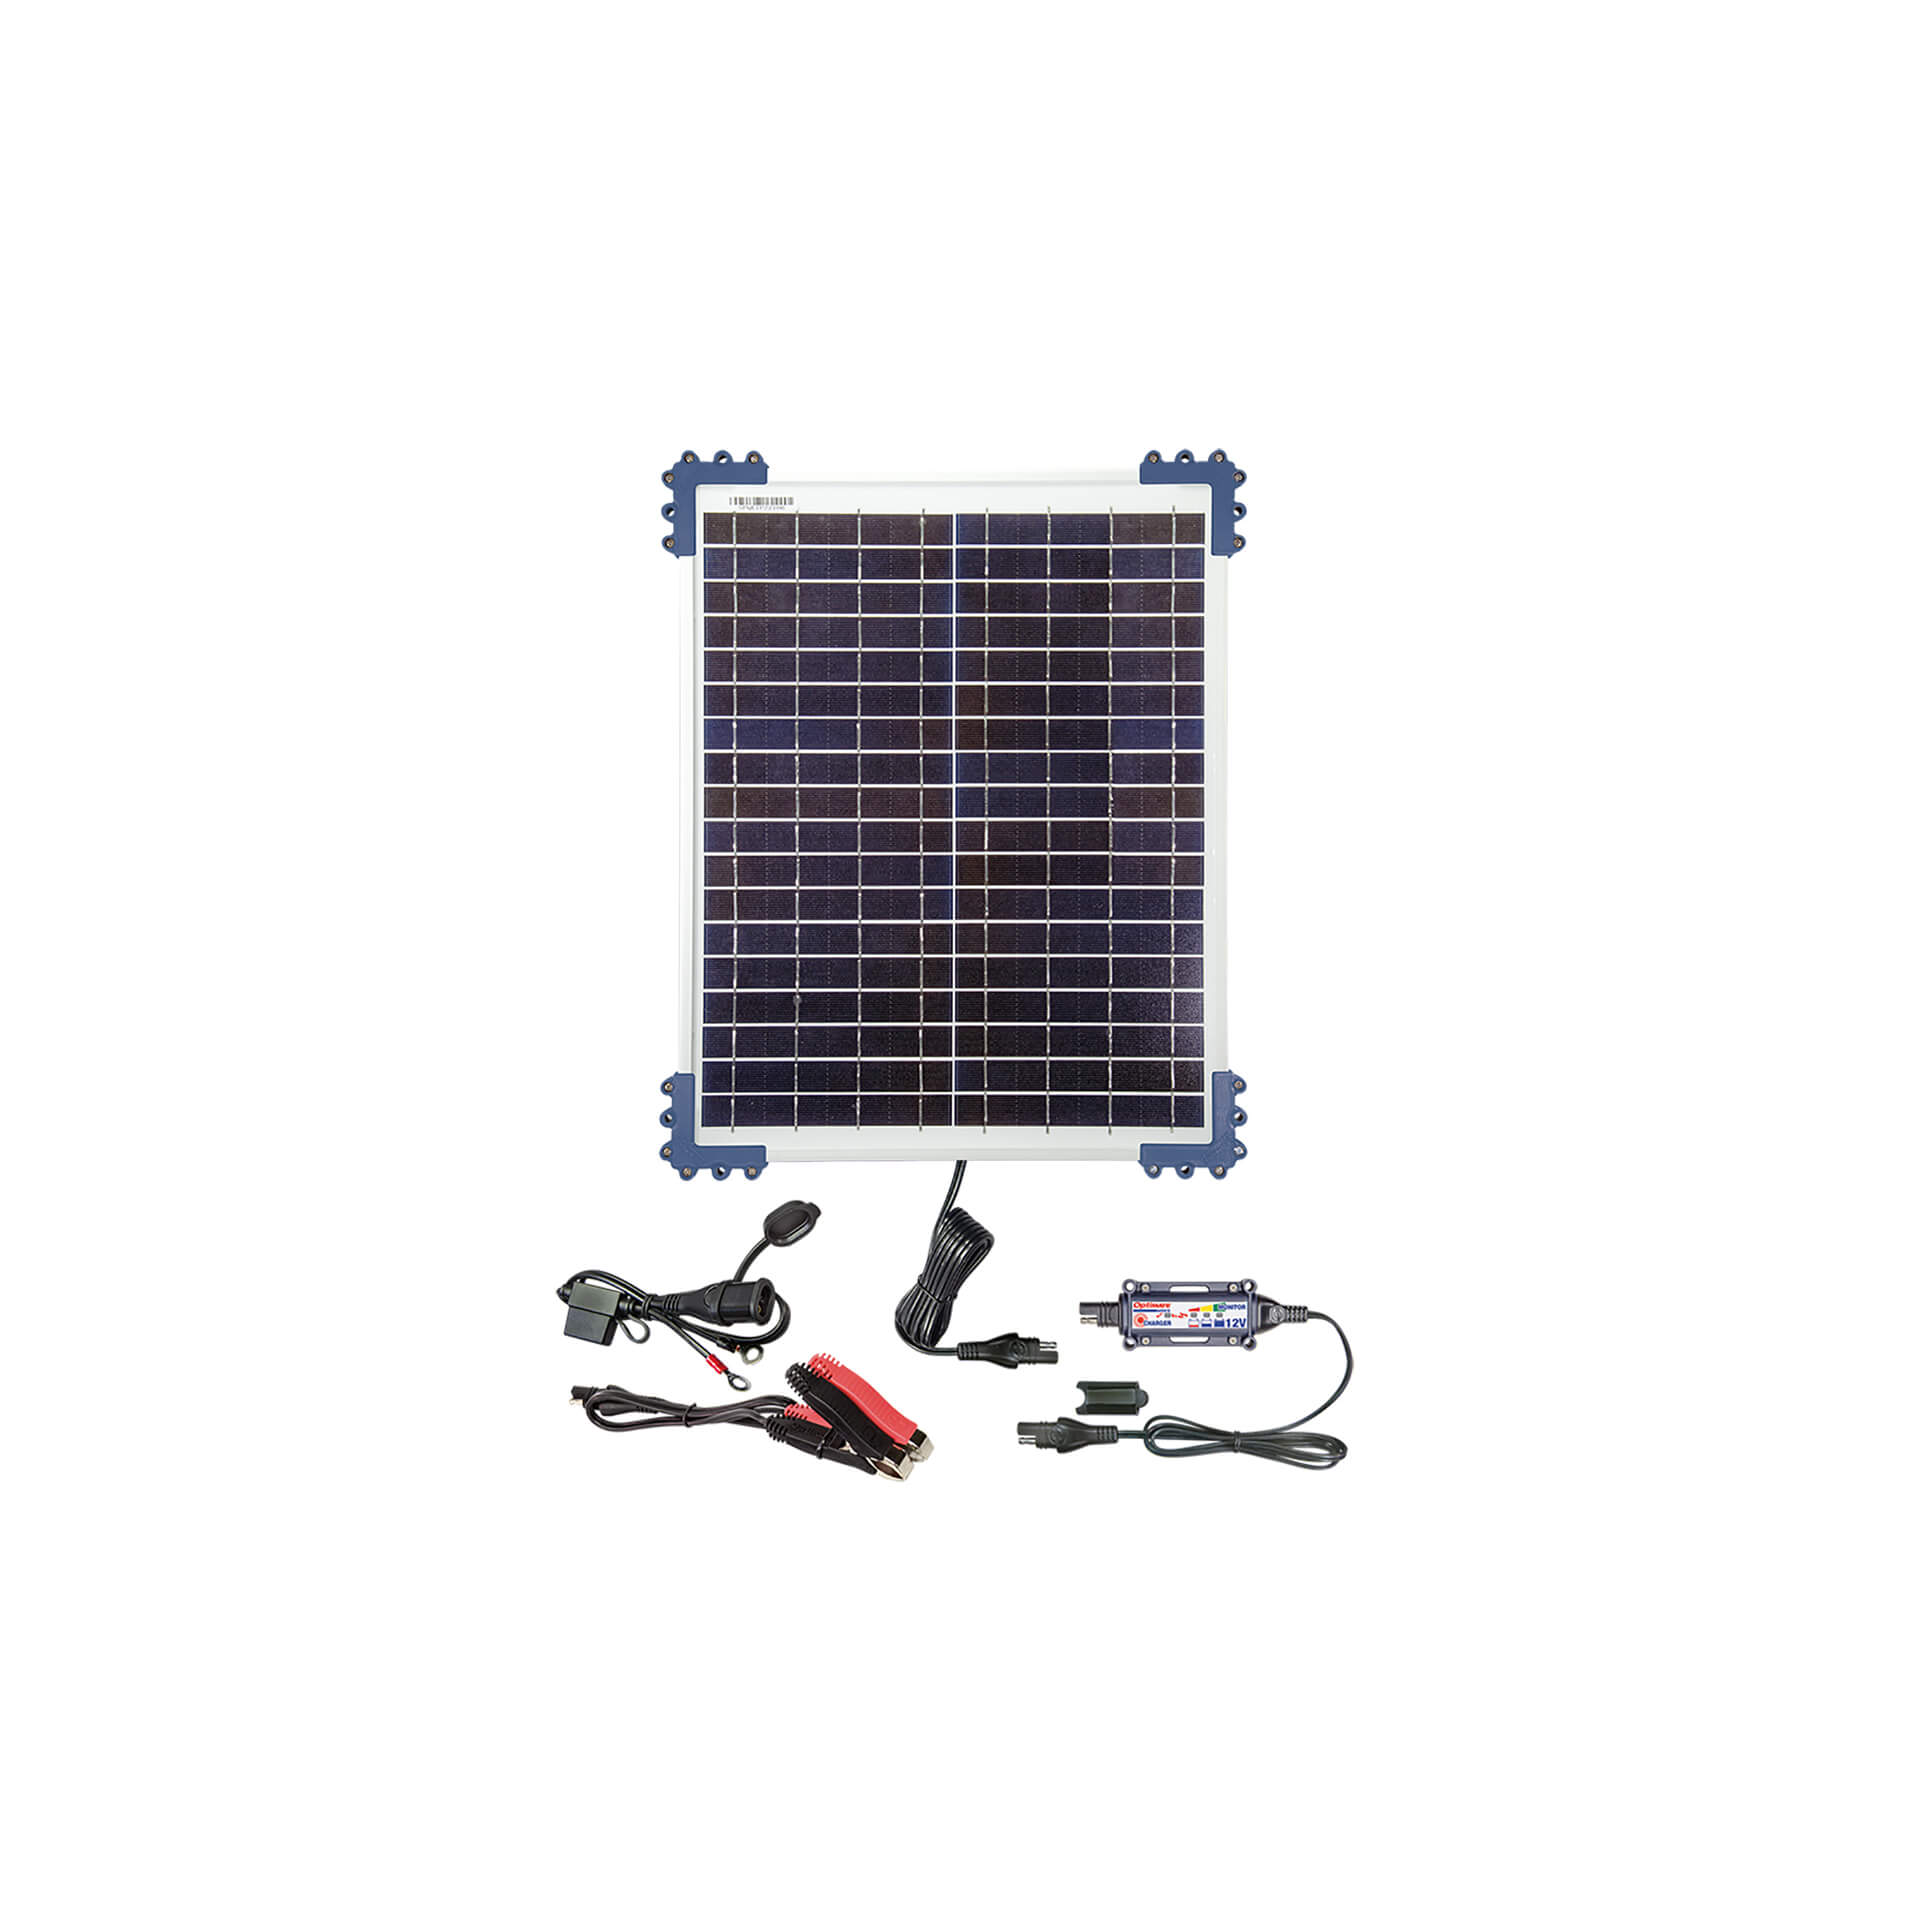 optimate Solar DUO Charger 20 Watt for Lead/GEL/AGM/LFP